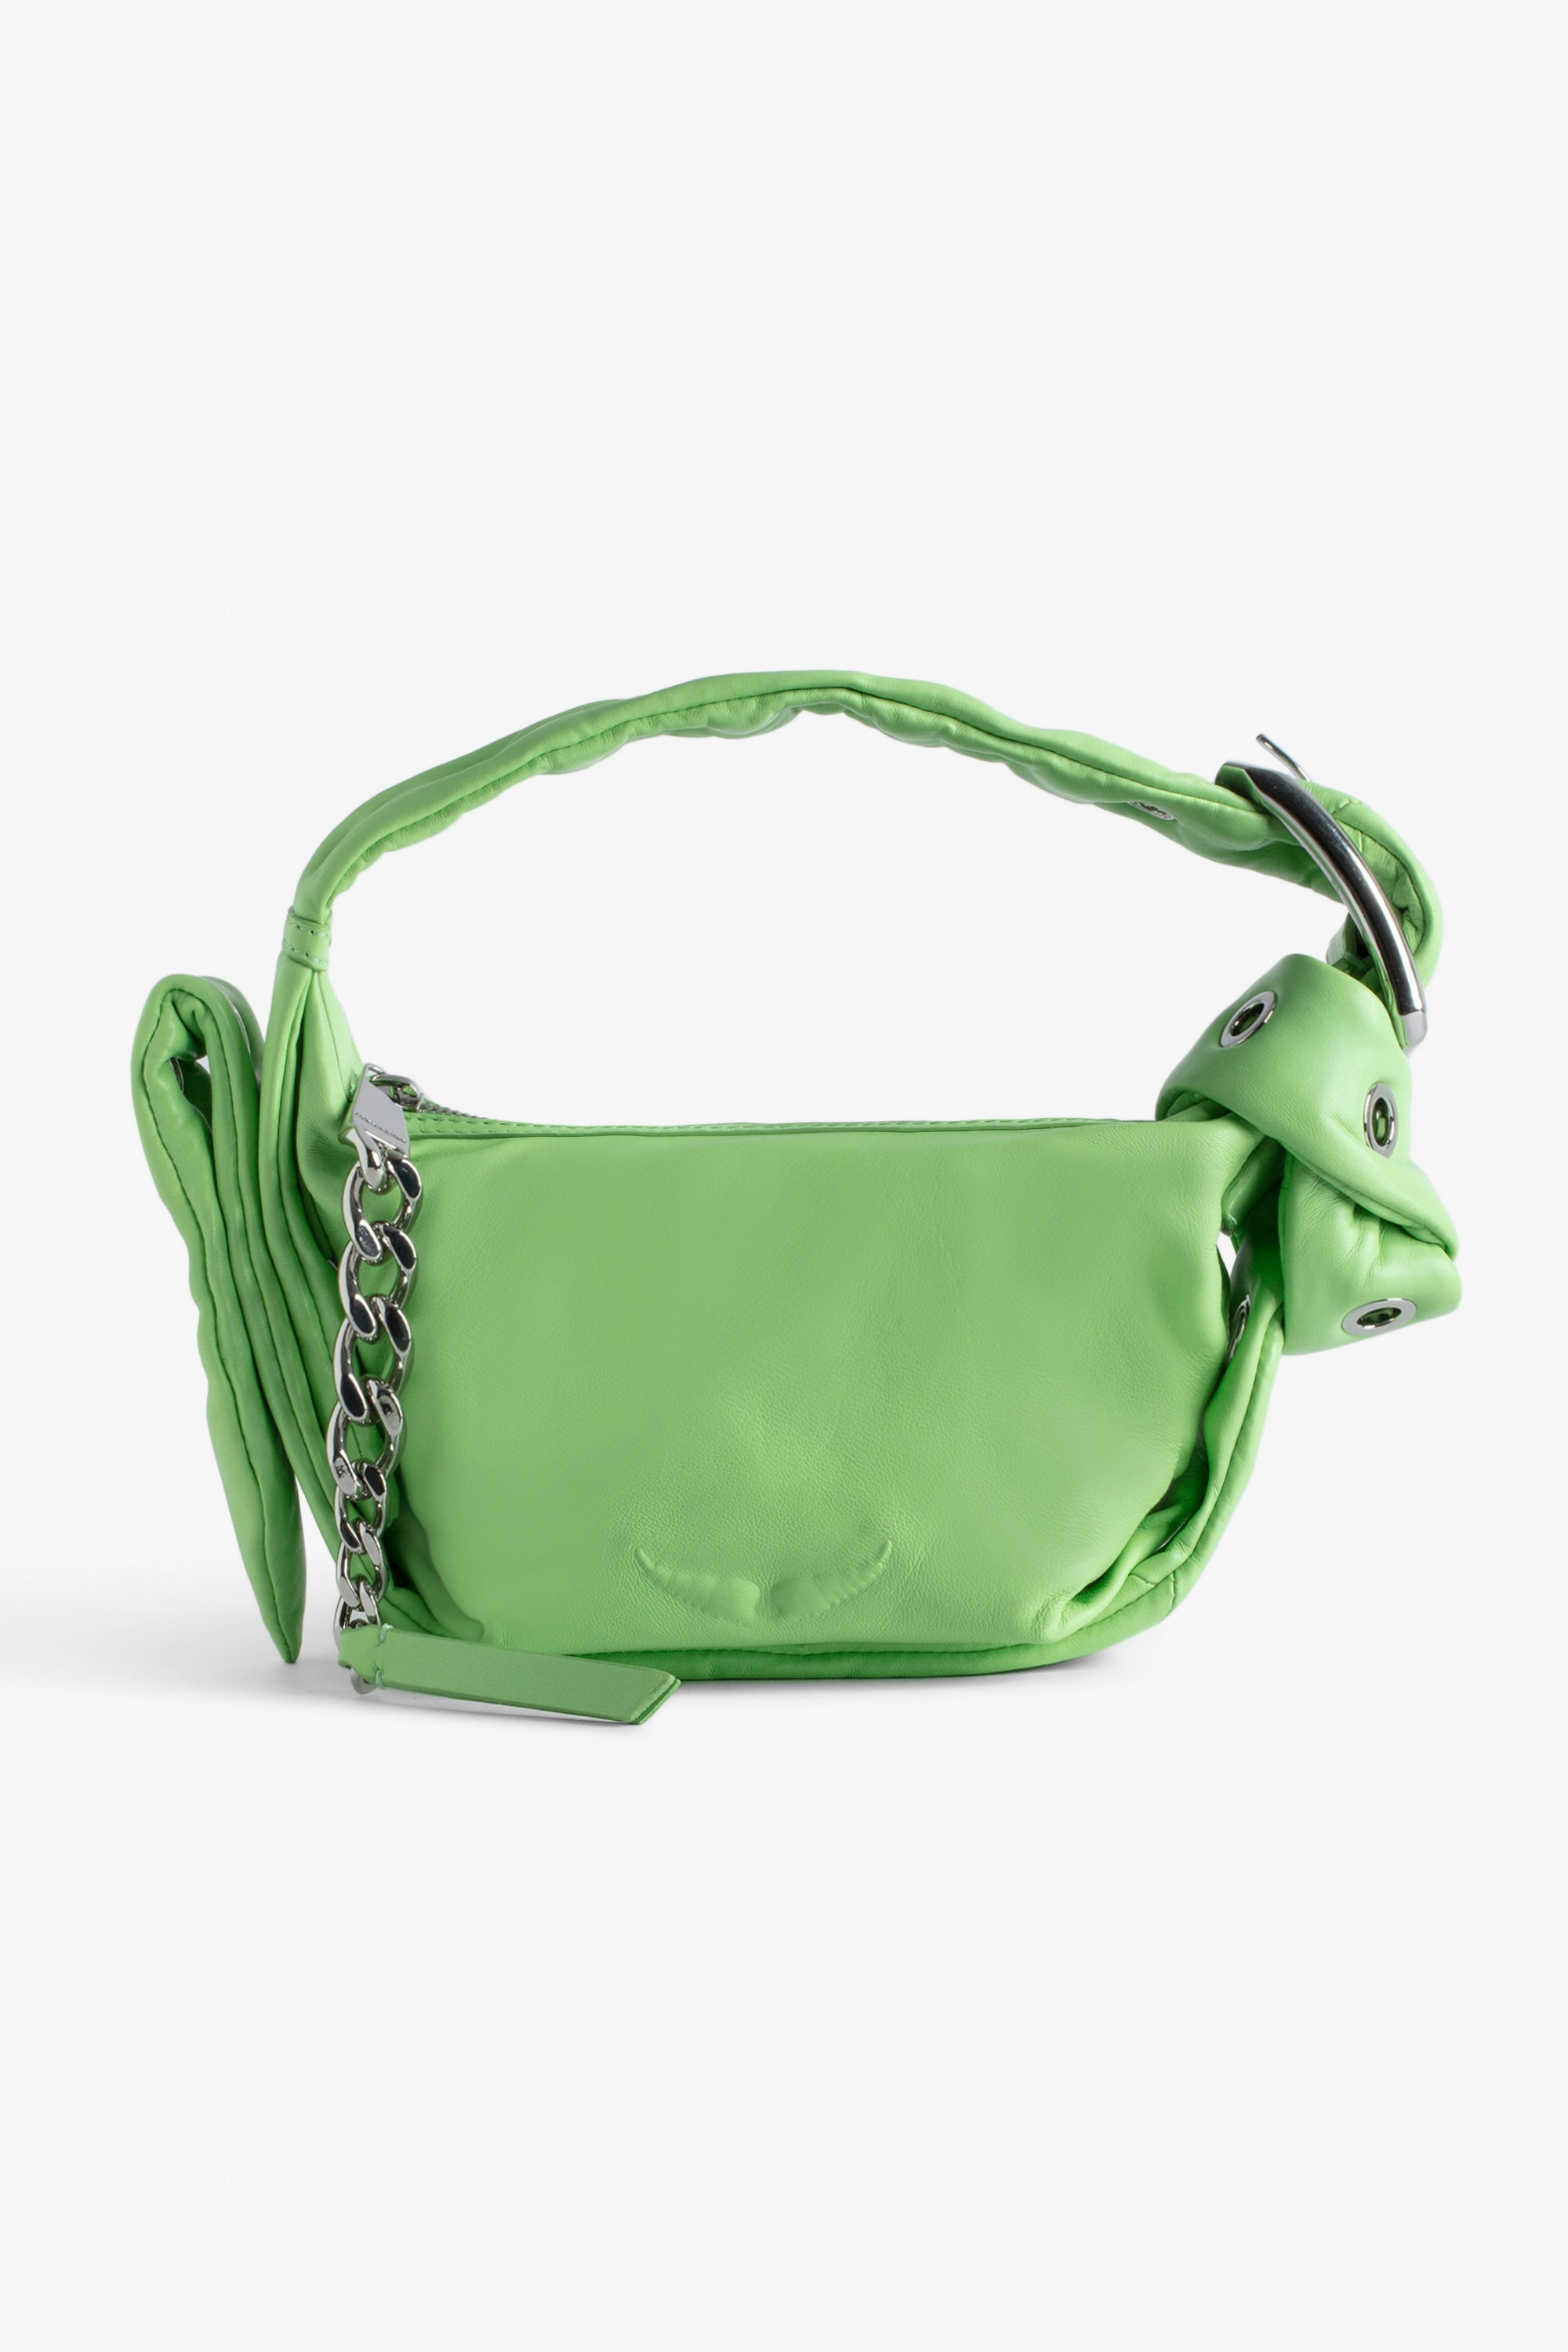 Borsa Le Cecilia XS Obsession Piccola borsa in pelle liscia verde con tracolla e fibbia in metallo a C da donna.